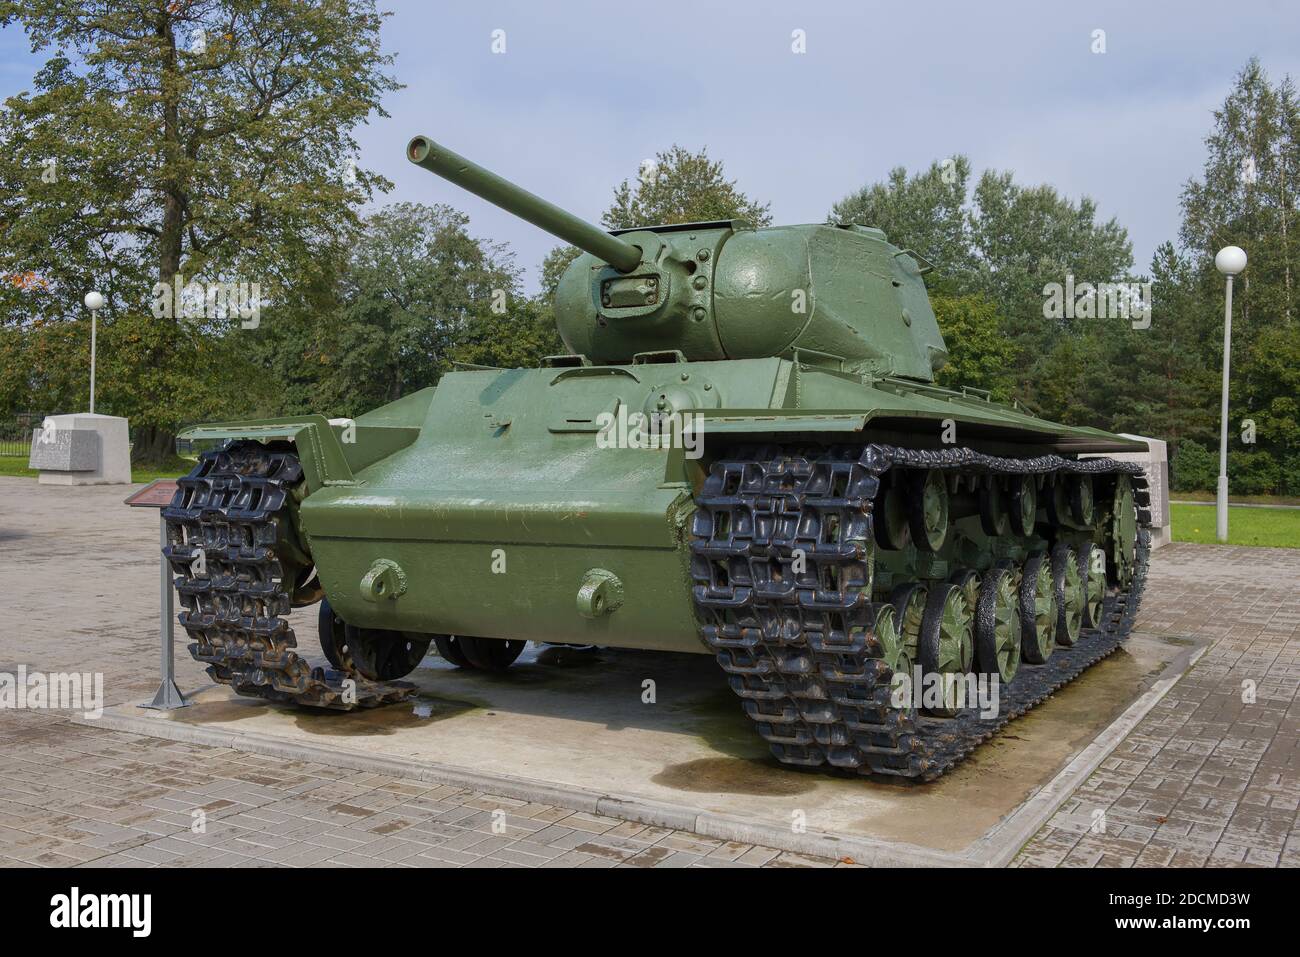 KIROWSK, RUSSLAND - 27. AUGUST 2020: Schwerer sowjetischer Panzer KV-1 während des Großen Vaterländischen Krieges aus nächster Nähe. Ausstellungsstück der Straßenausstellung des Museums Stockfoto